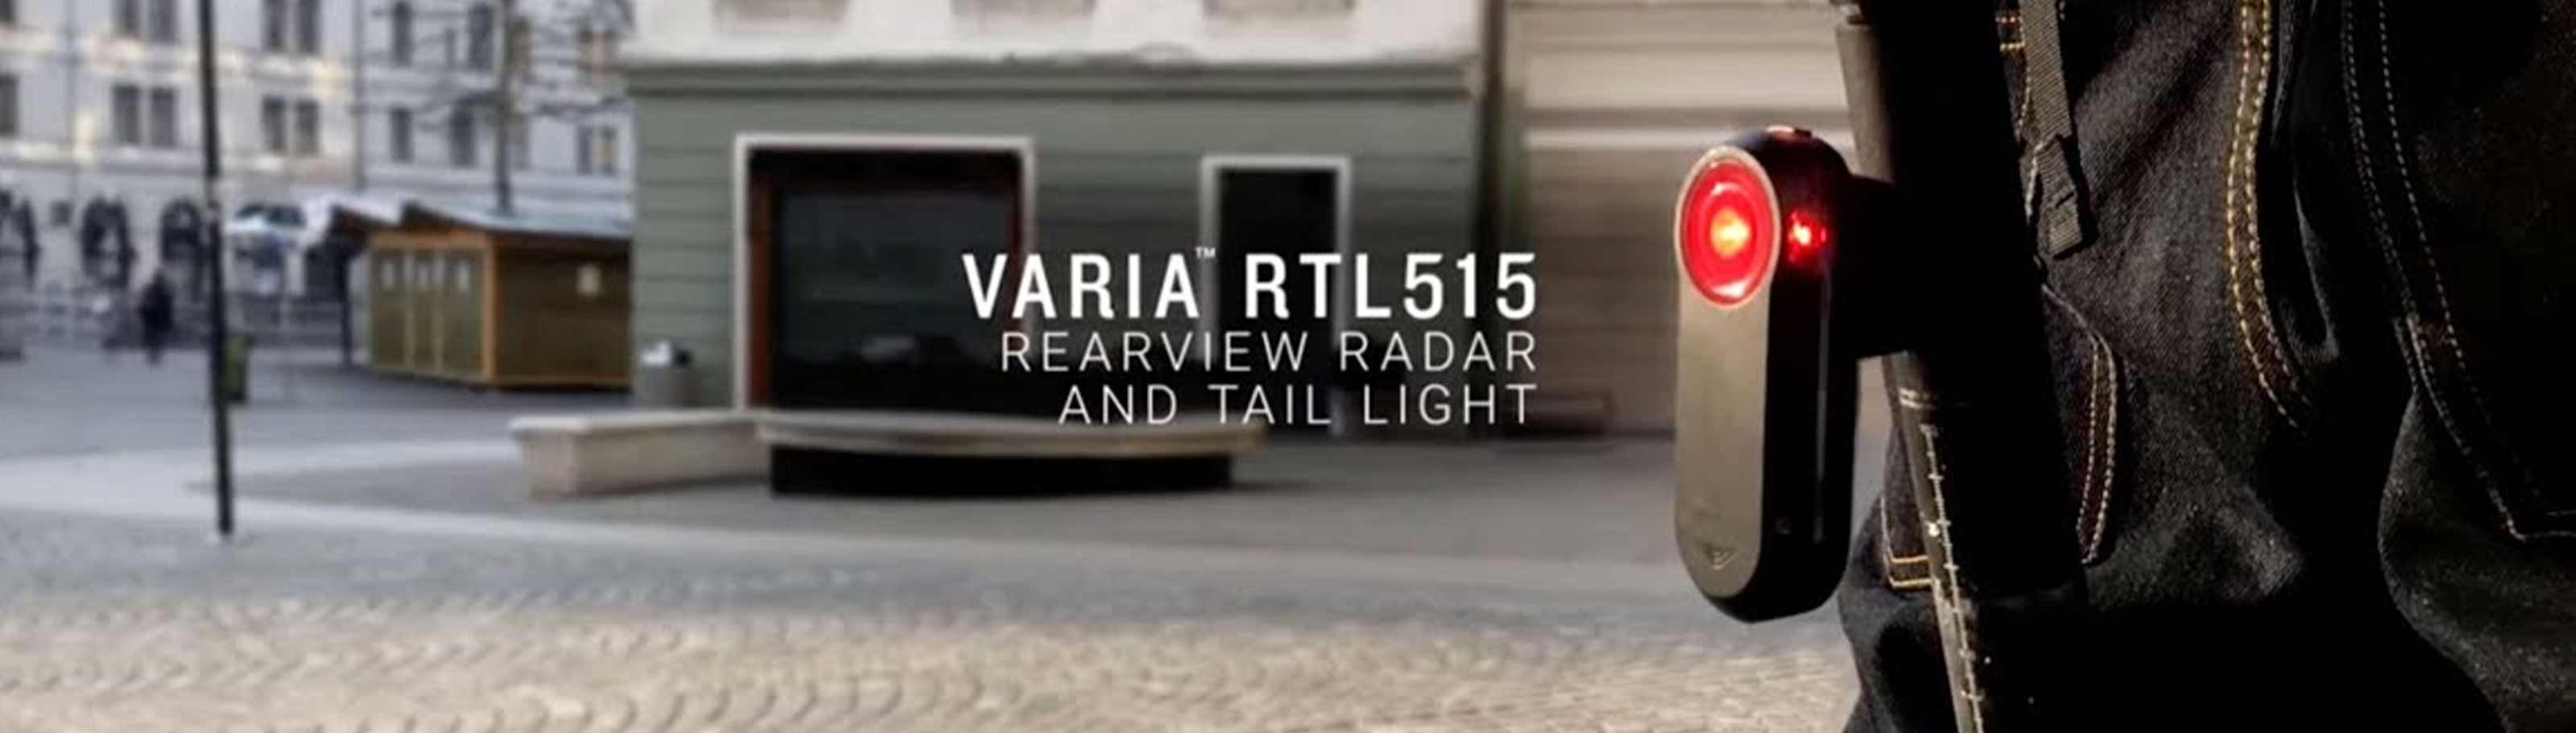 Garmin Varia RTL515 Rearview Radar Taillight